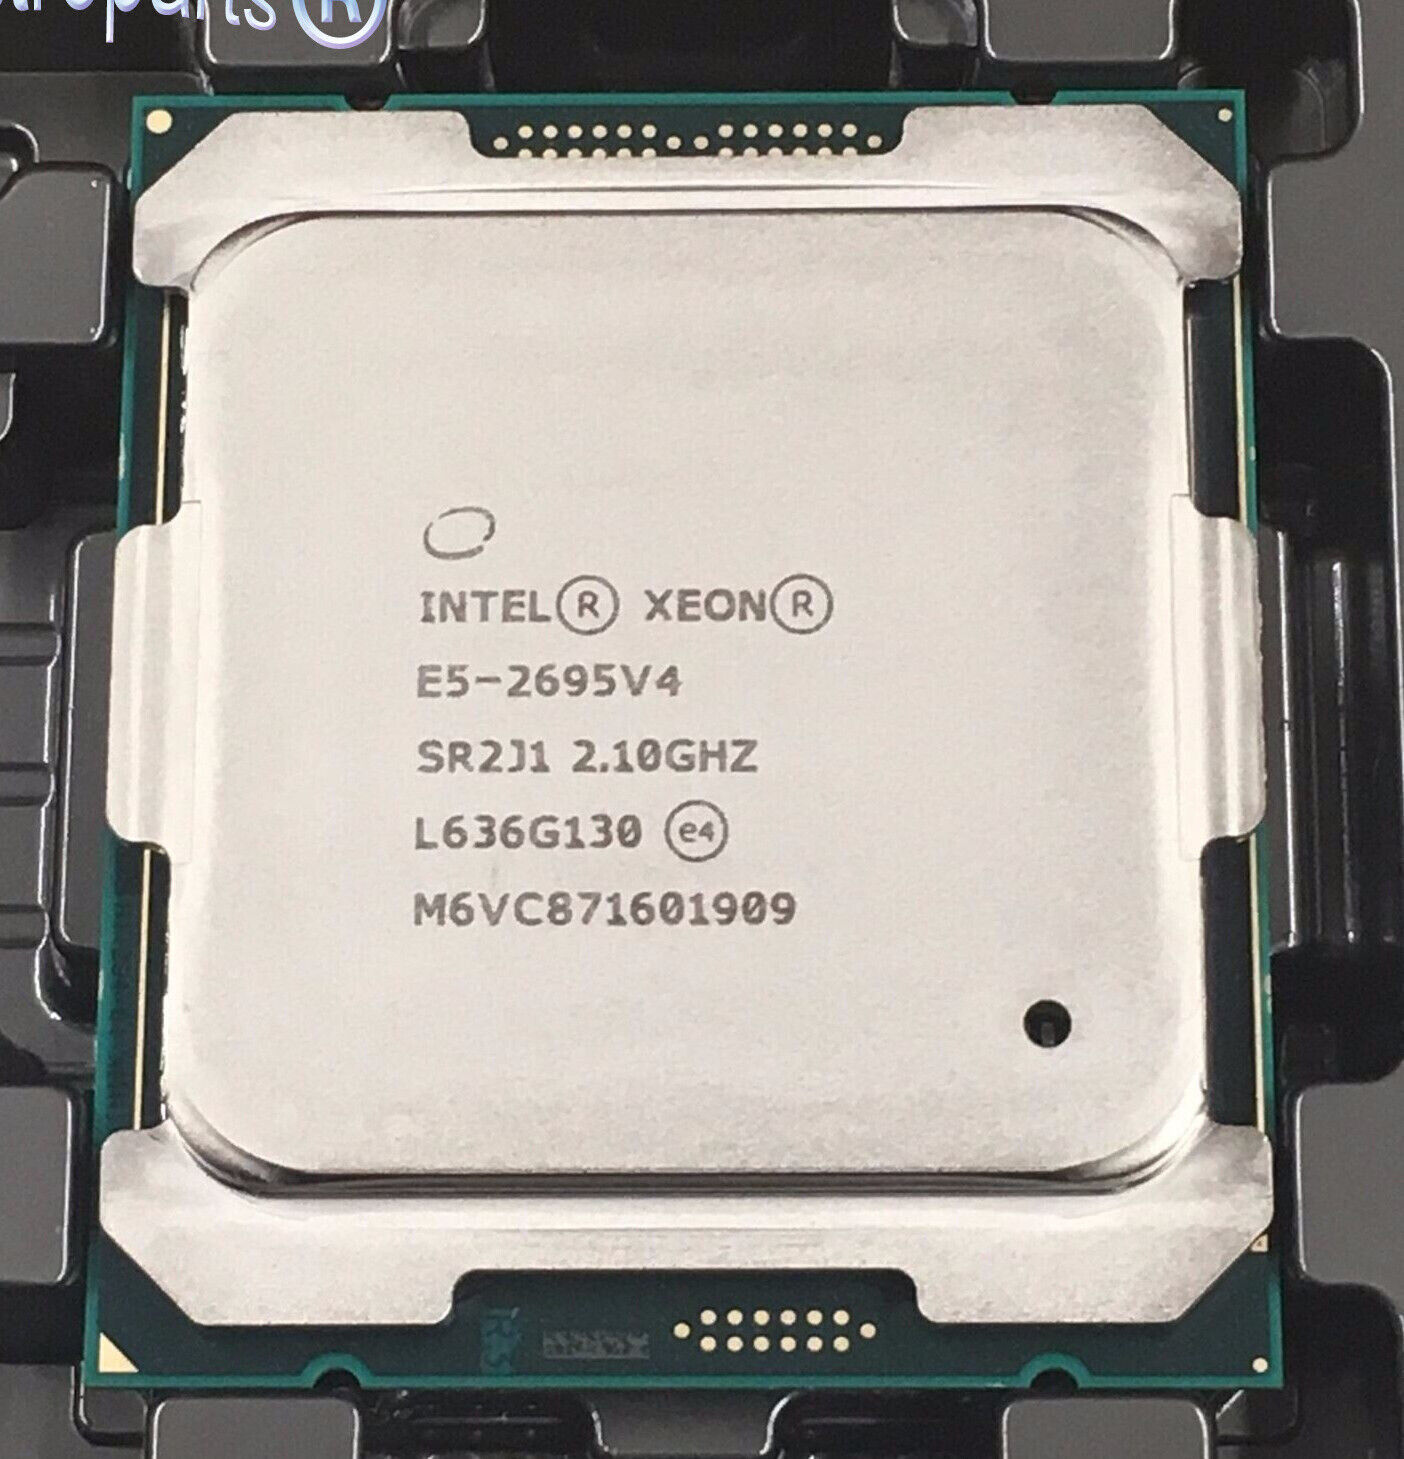 E5 2695 V4 Intel Xeon E5-2695 V4 SR2J1 18 Core 2.10GHz LGA 2011V3 CPU Processor